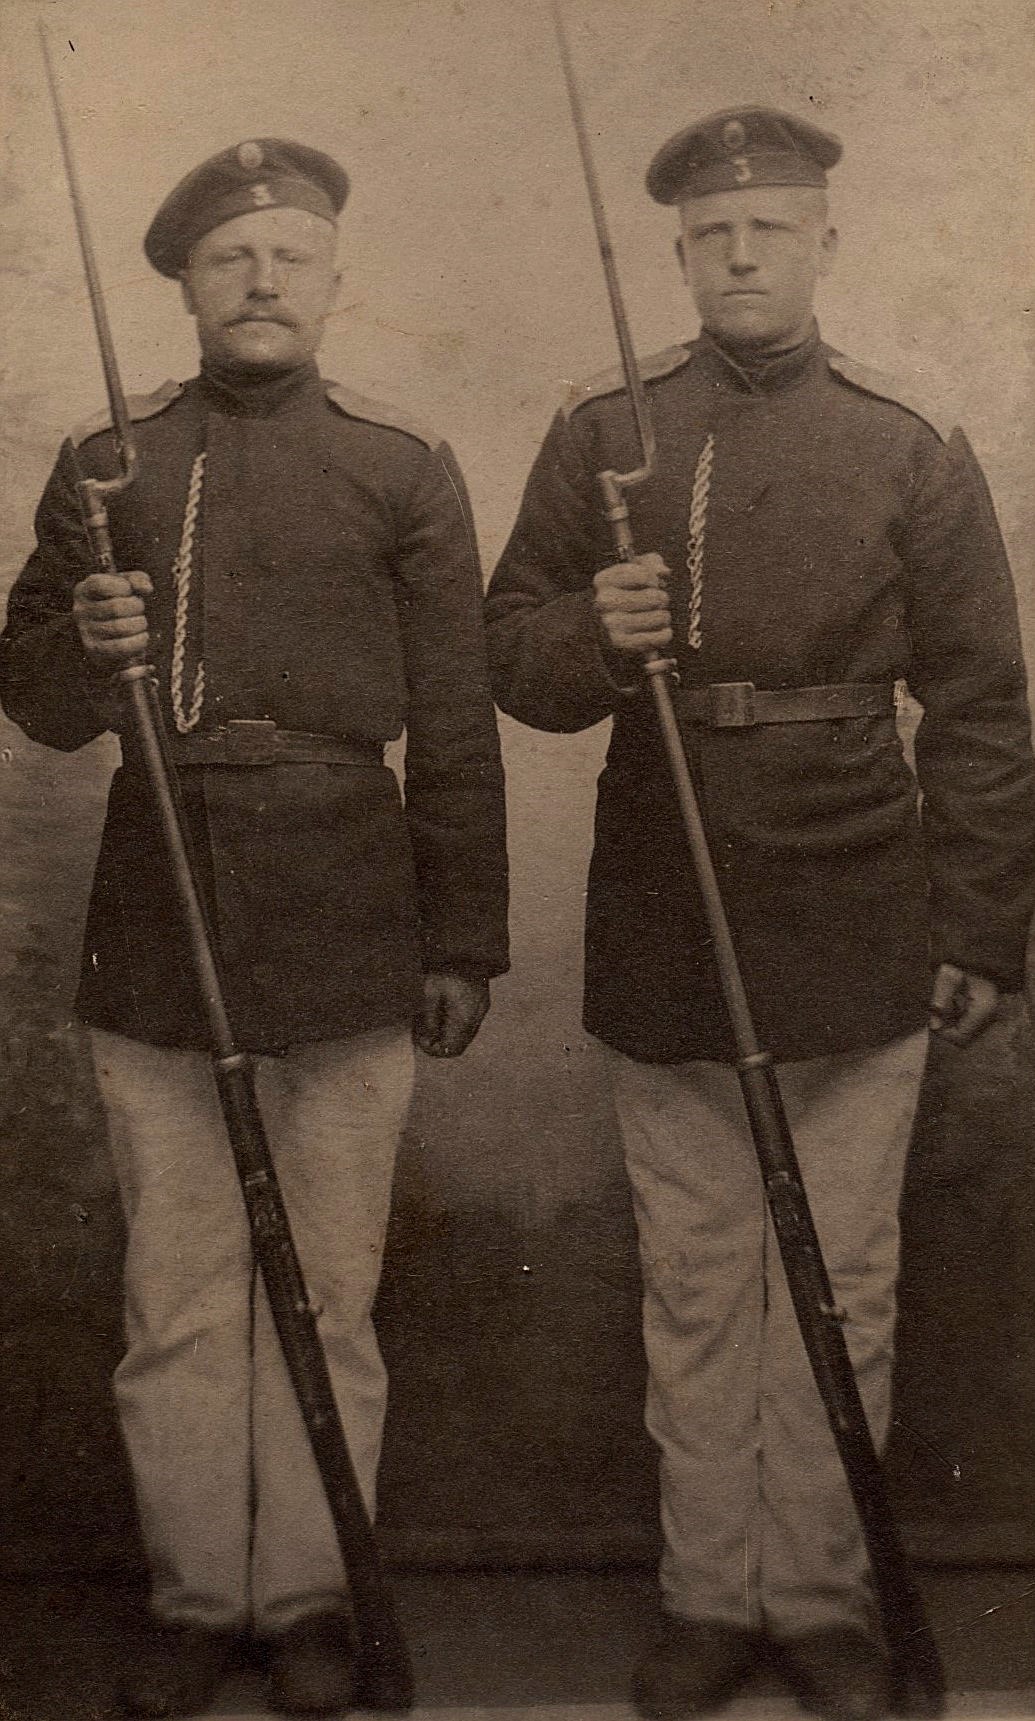 I slutet av 1800-talet var grannarna Nyroos Viktor t.v. och Storkull Josef Henrik i 3 års tid i den ryska militären.